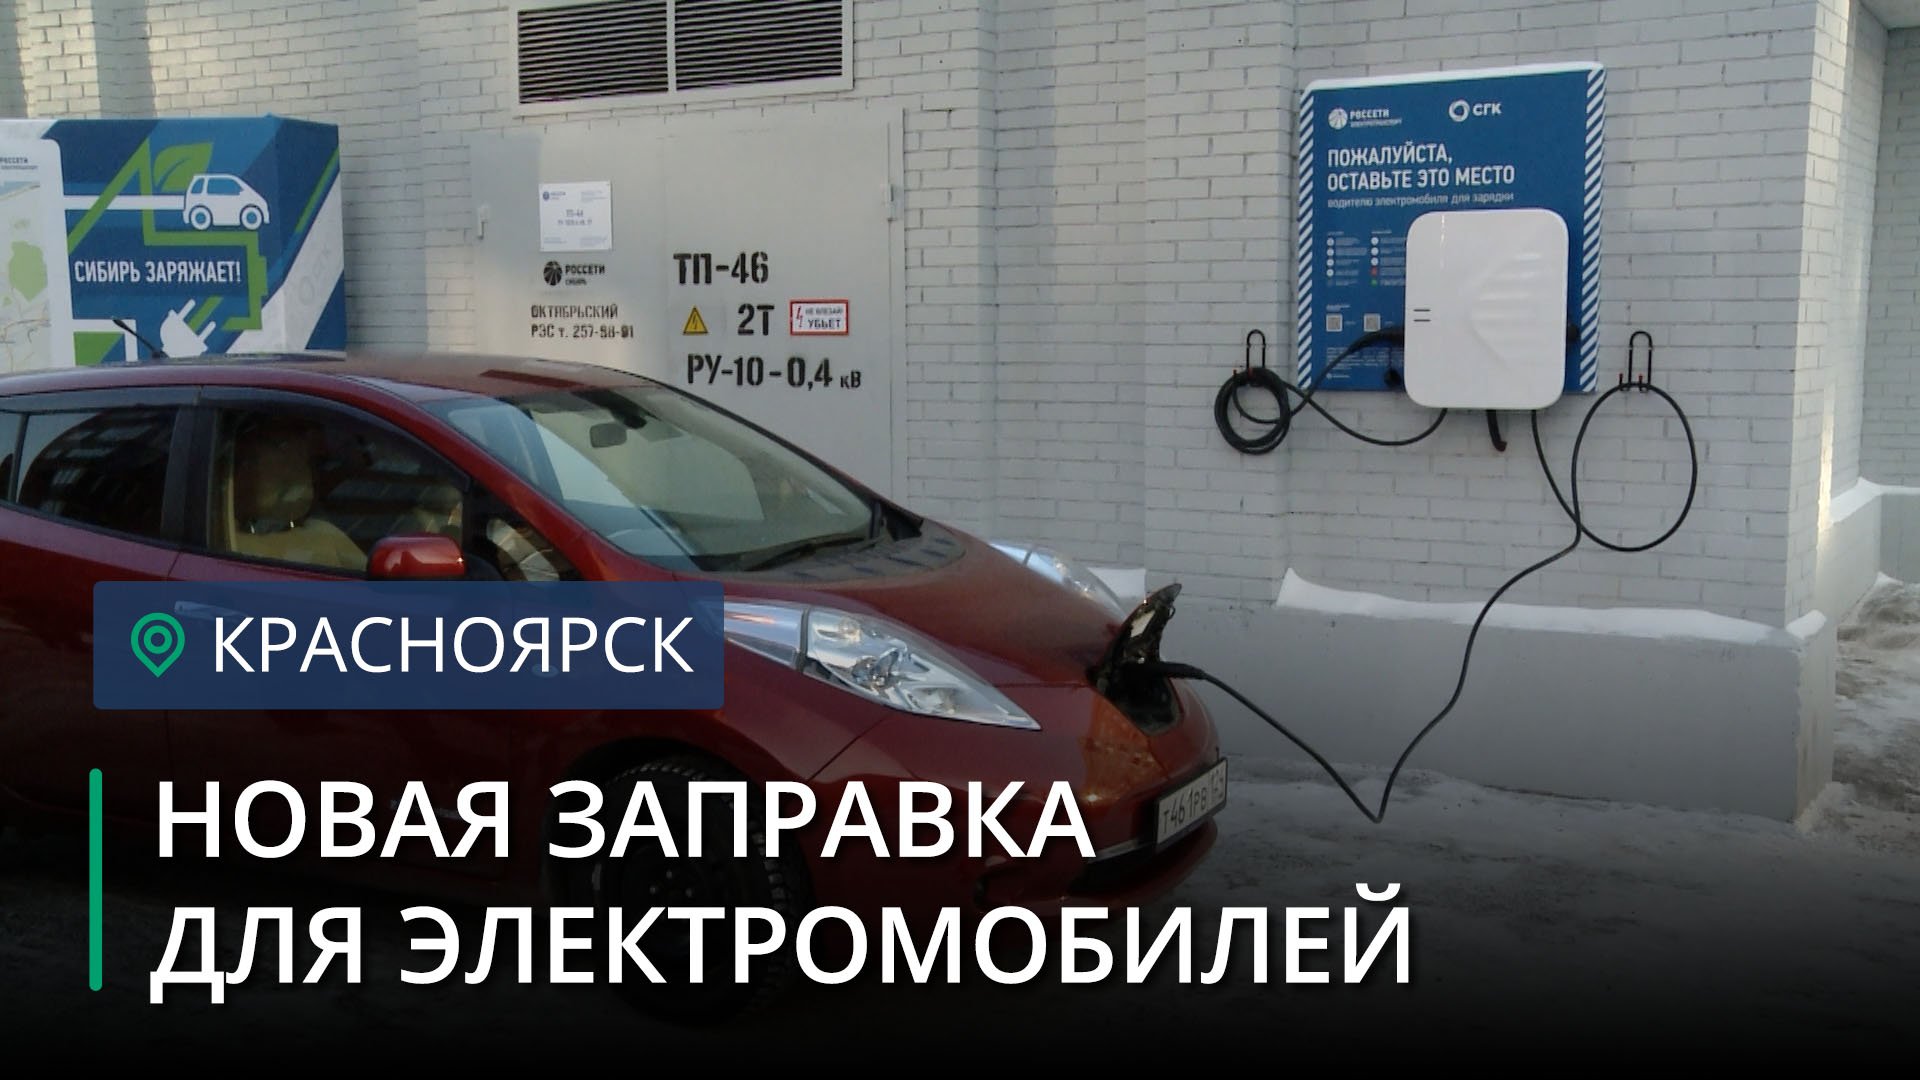 Приложение станций зарядки электромобилей. Заправка для электрокаров в Астрахани. Сибирь заряжает Новосибирск.